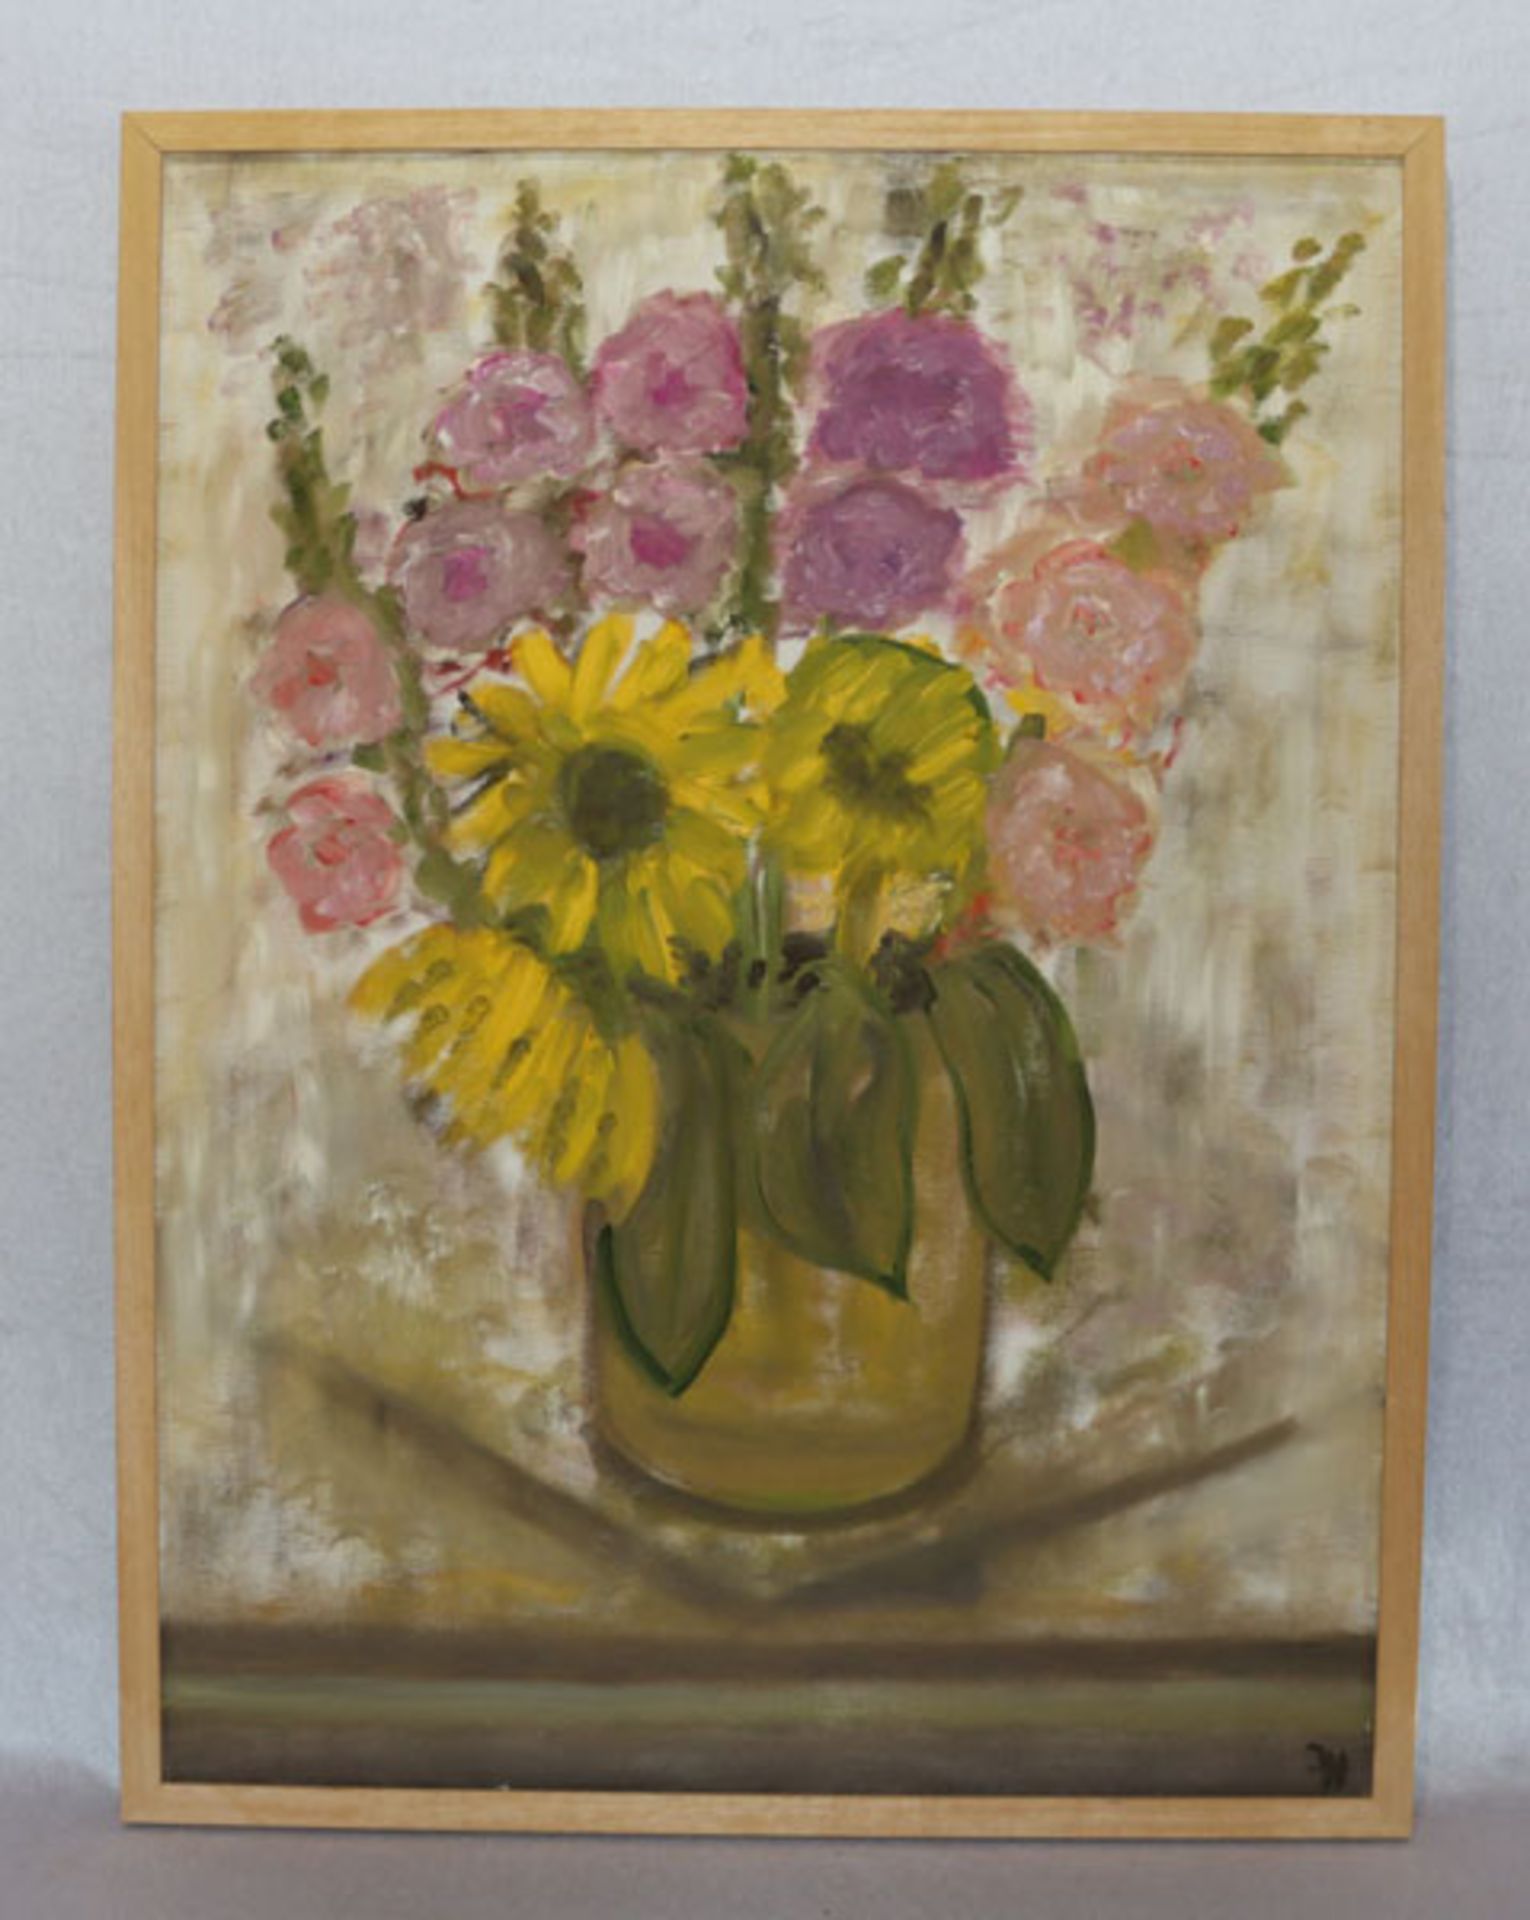 Gemälde ÖL/LW 'Sommerblumen in Vase', monogrammiert I. H. für Irene Hederer, Tutzing, gerahmt, incl.